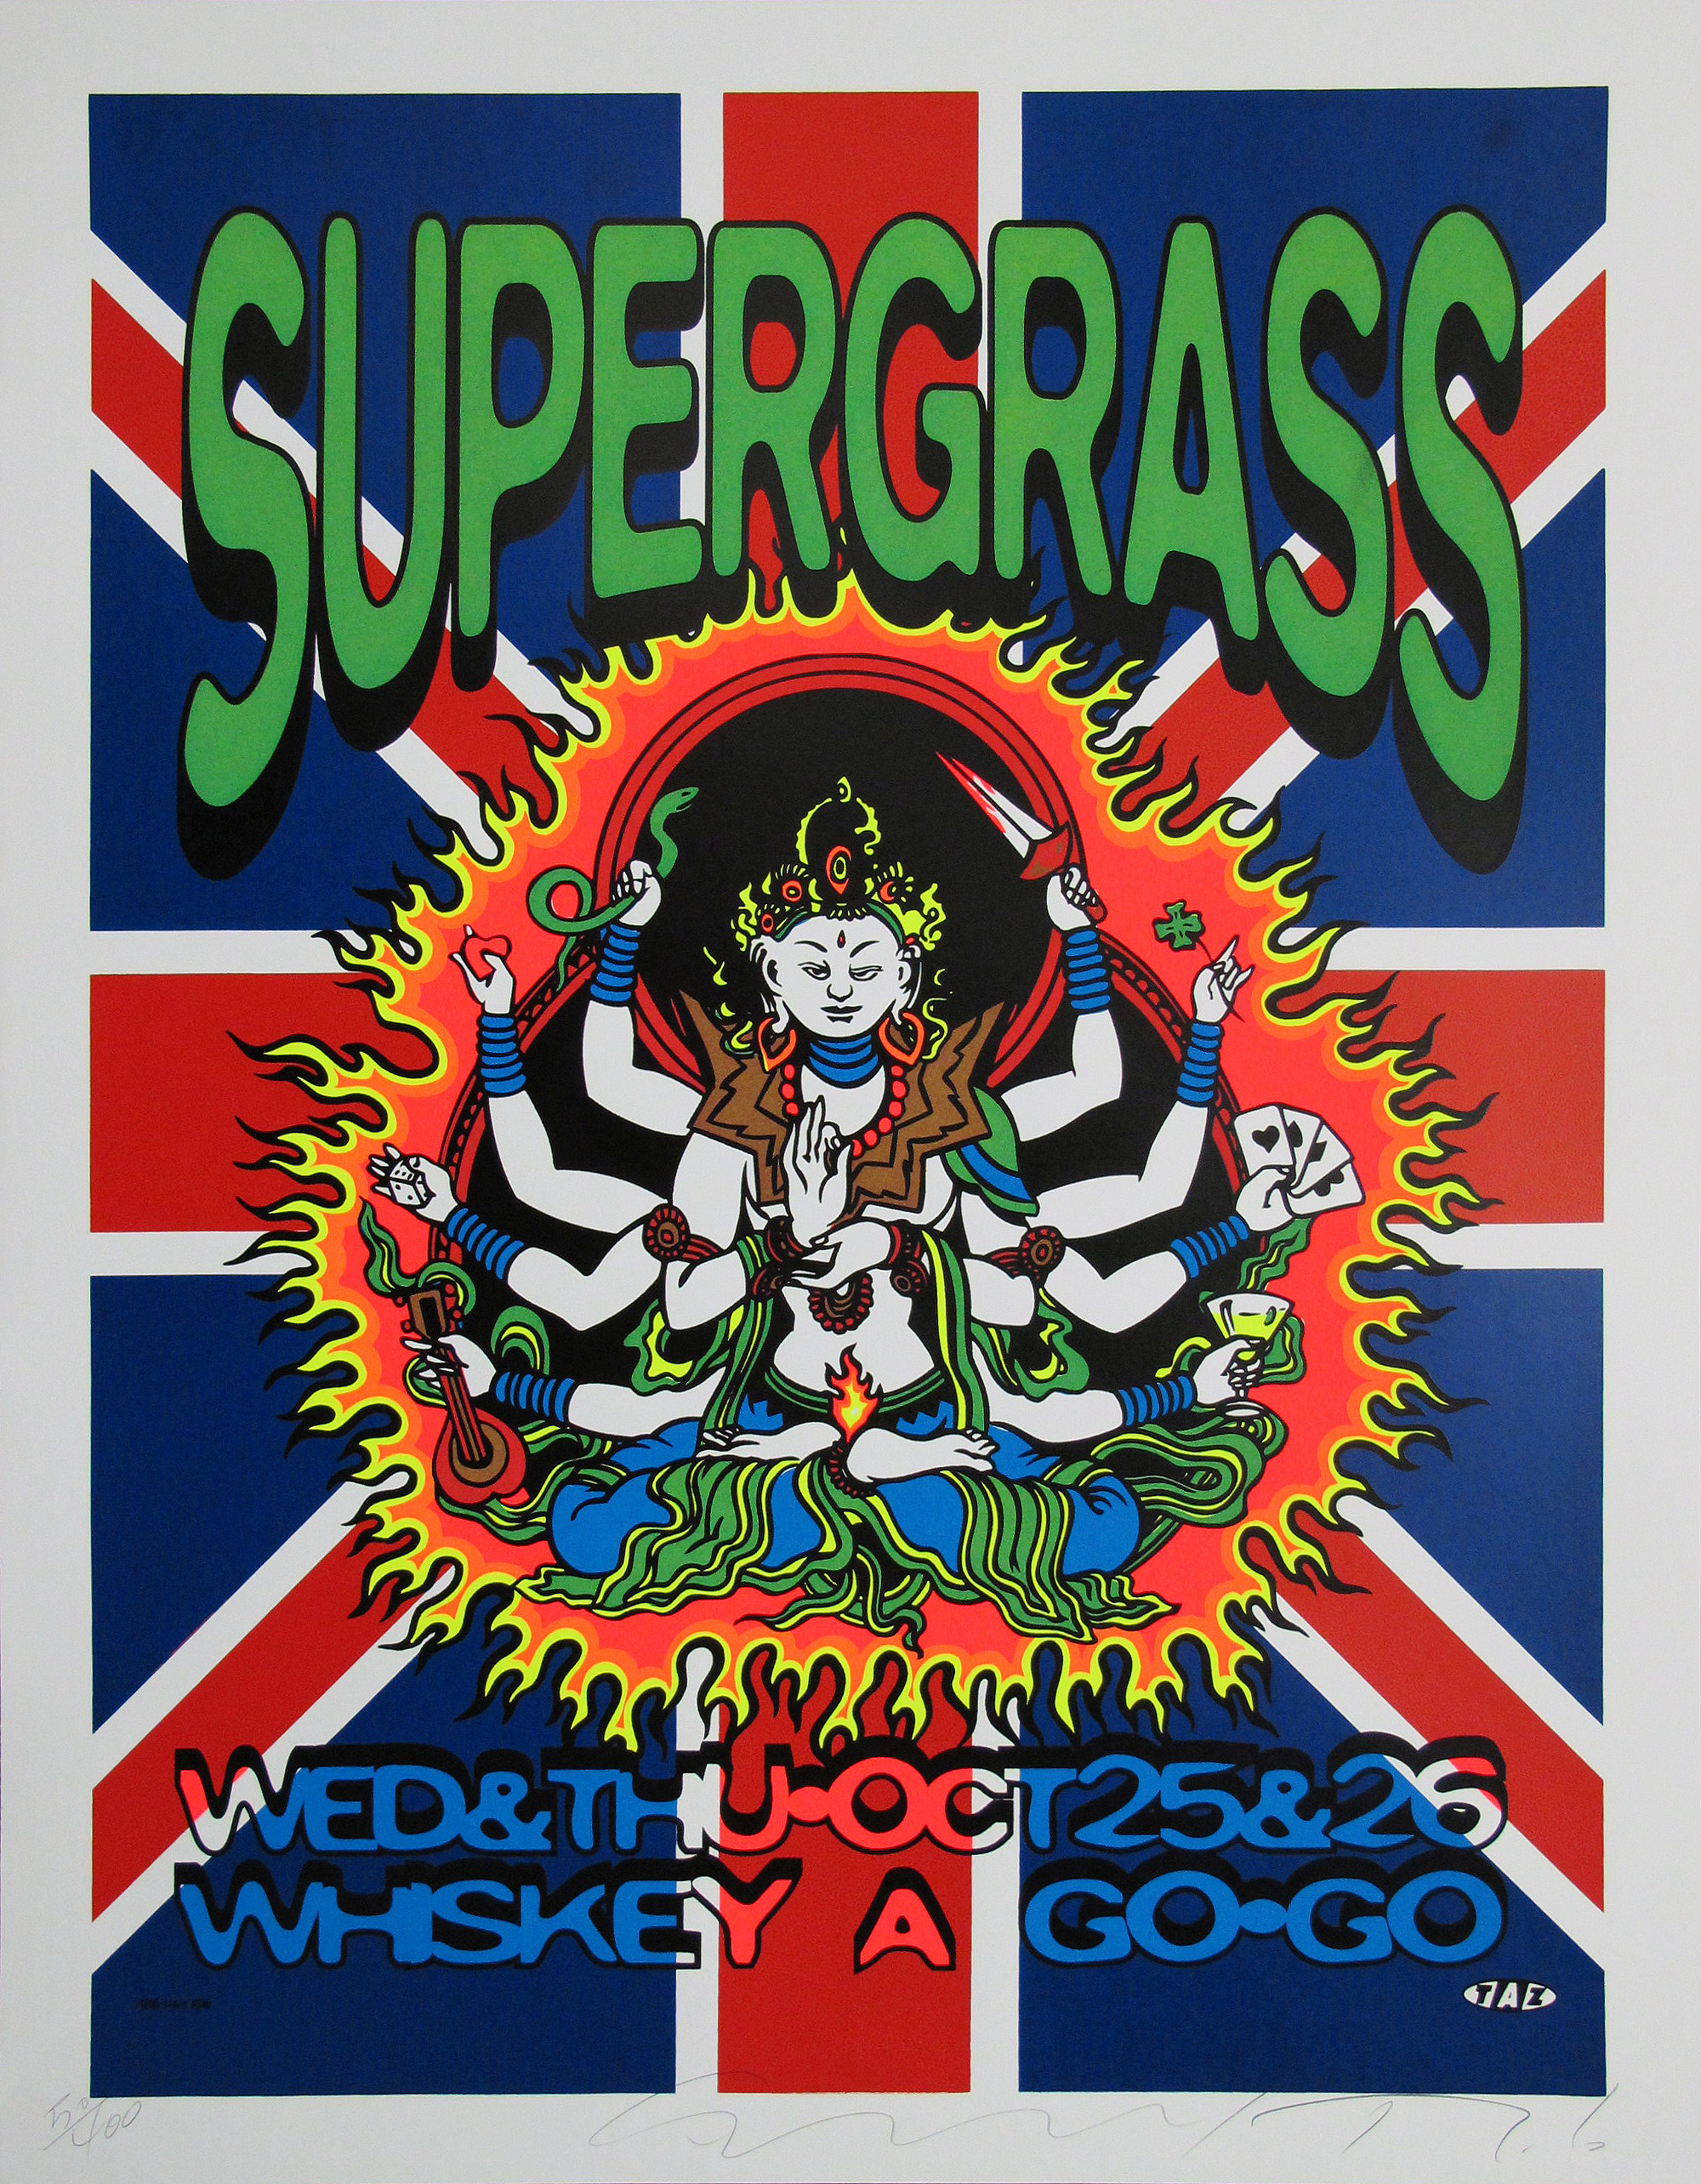 Supergrass Concert Poster